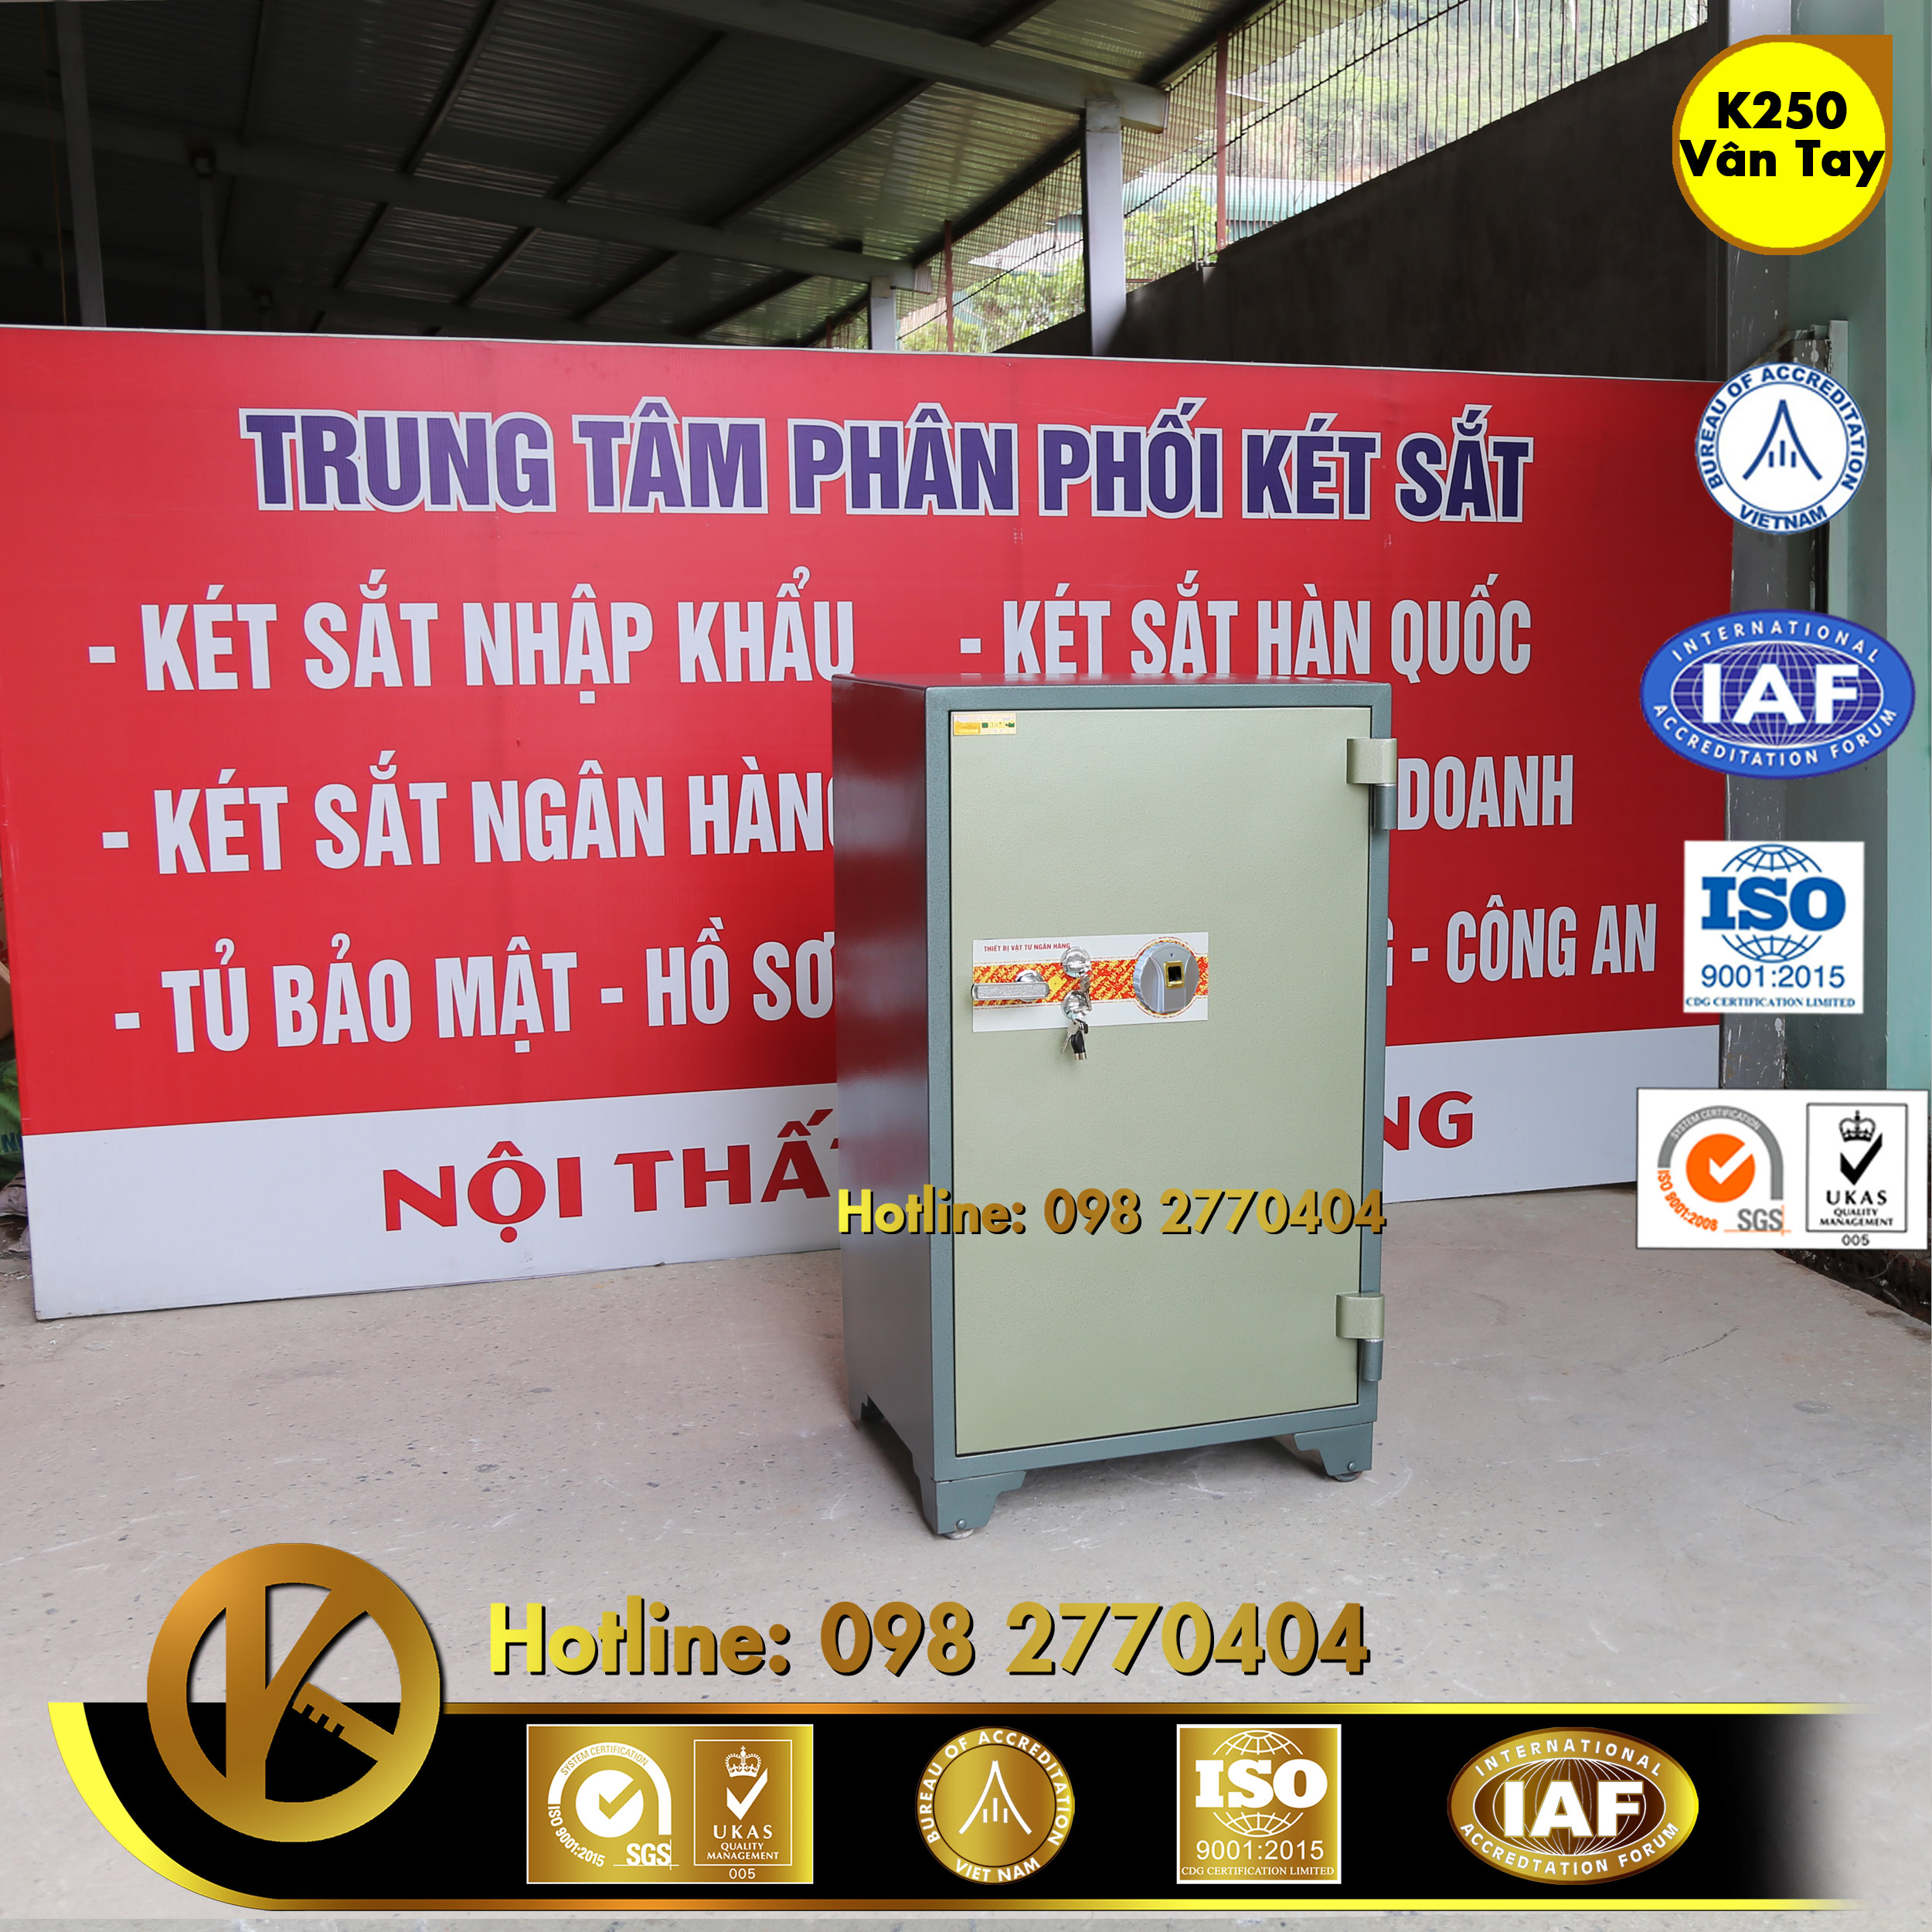 hình ảnh sản phẩm KÉT SẮT NGÂN HÀNG K250 Khoá Vân Tay